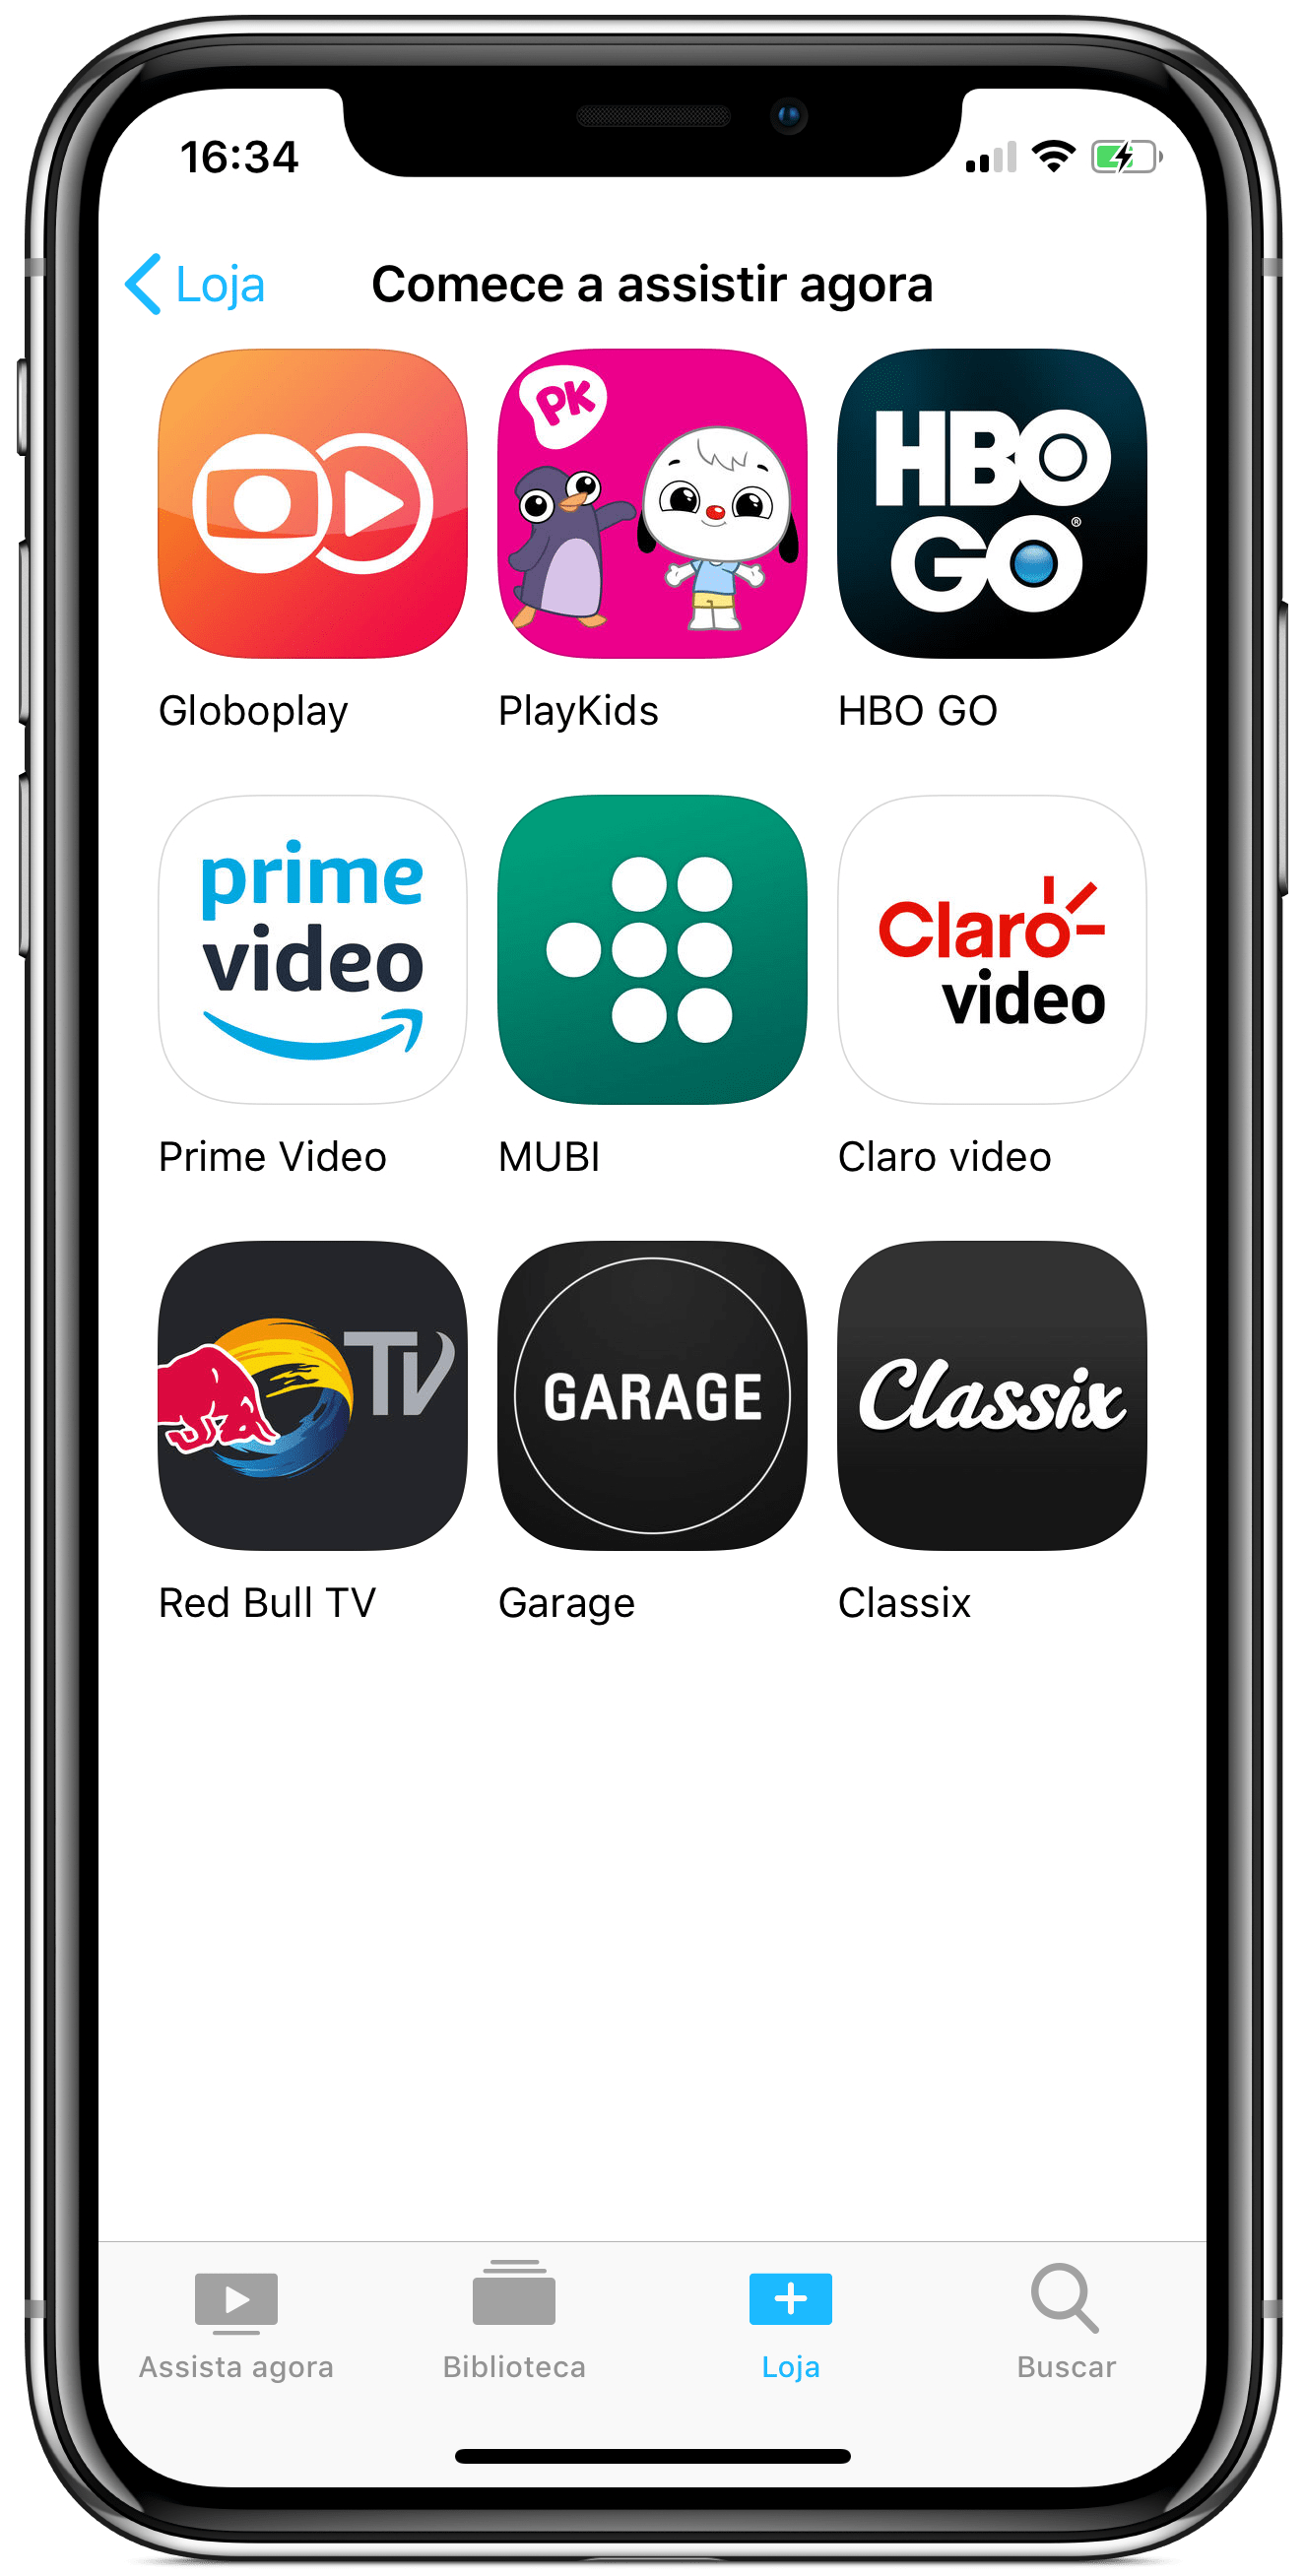 App Classix dentro do app TV